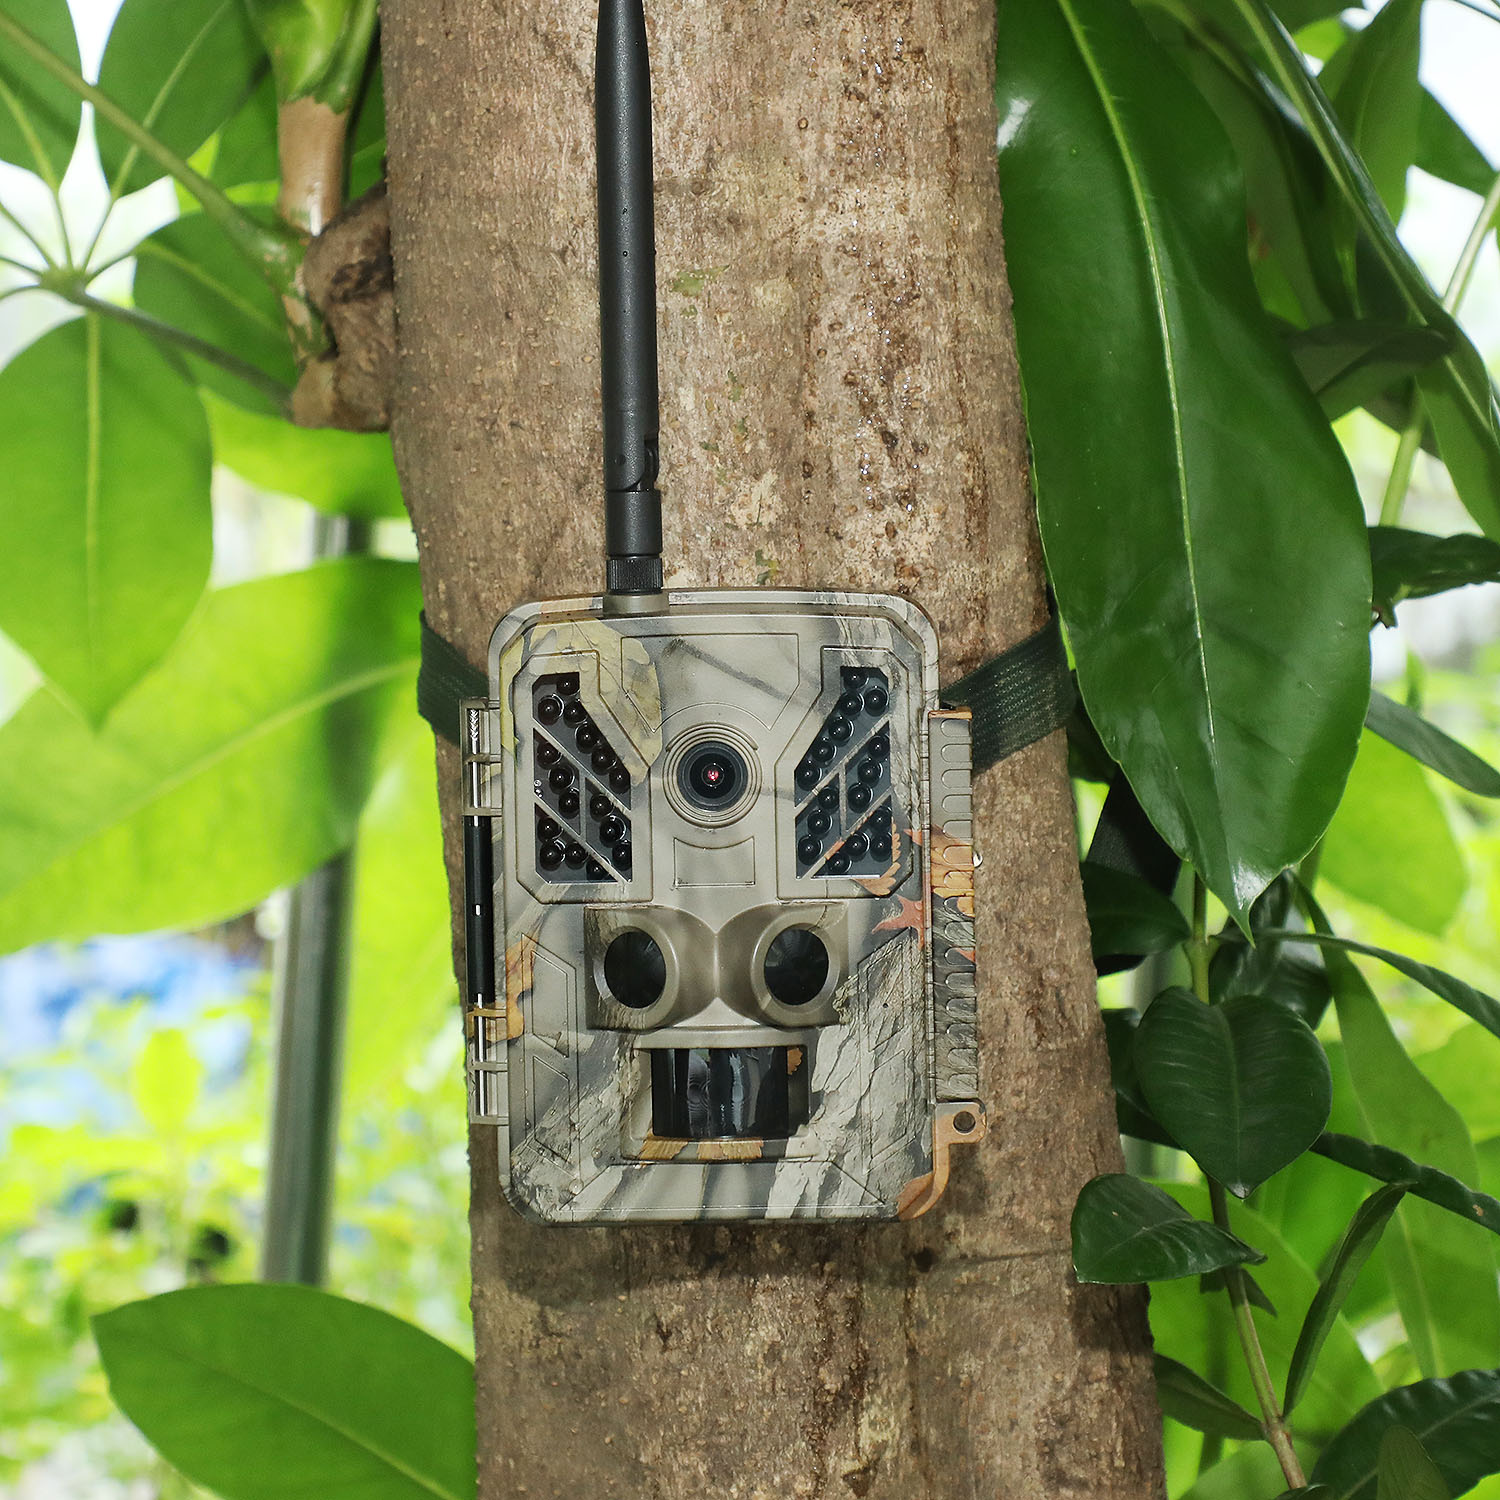 Vysoce kvalitní 36MP mobilní venkovní trailová kamera Ovládání aplikací MMS SMTP FTP 4G Scout kamera pro lov